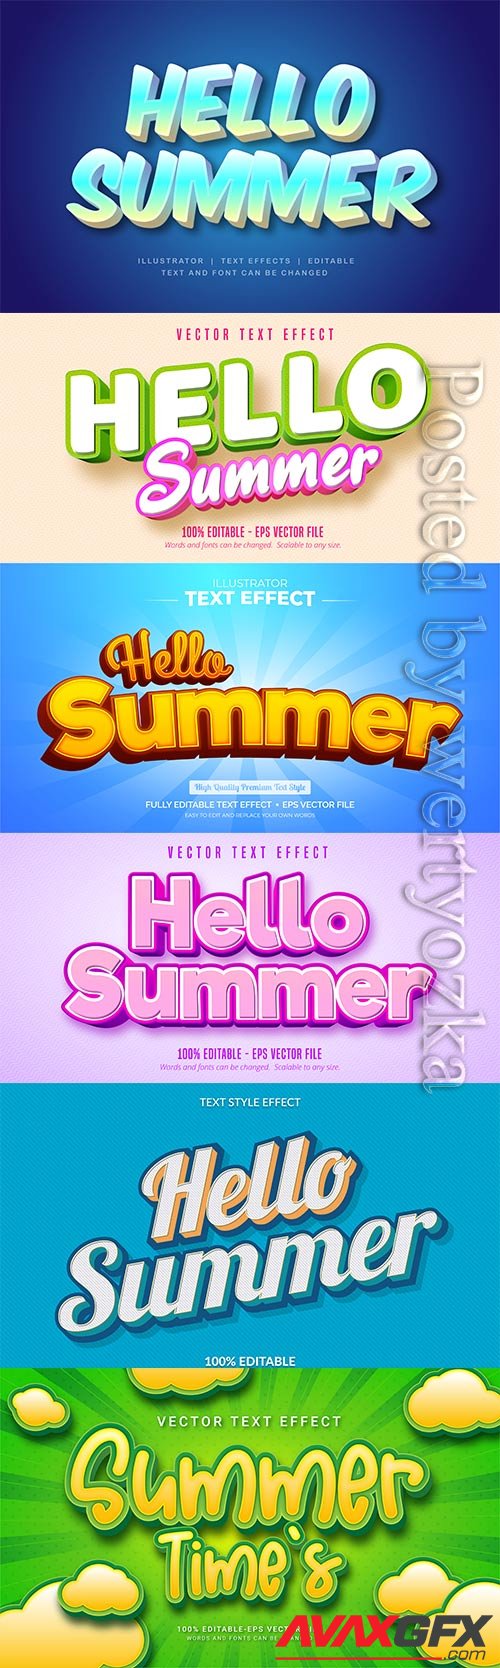 Hello summer text effect